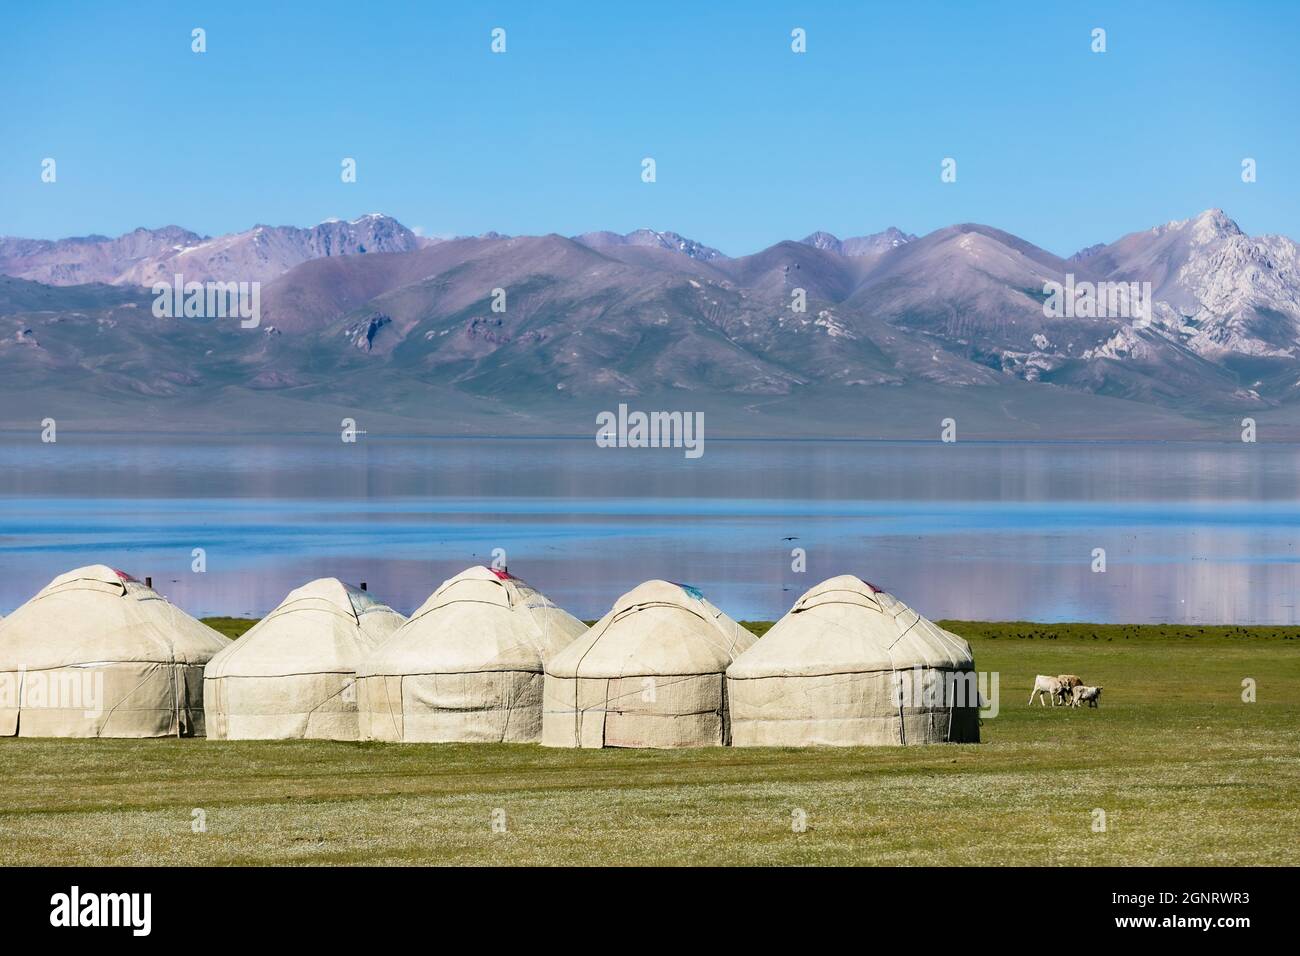 Kyrgyz yurts on the shore of mountain lake Stock Photo